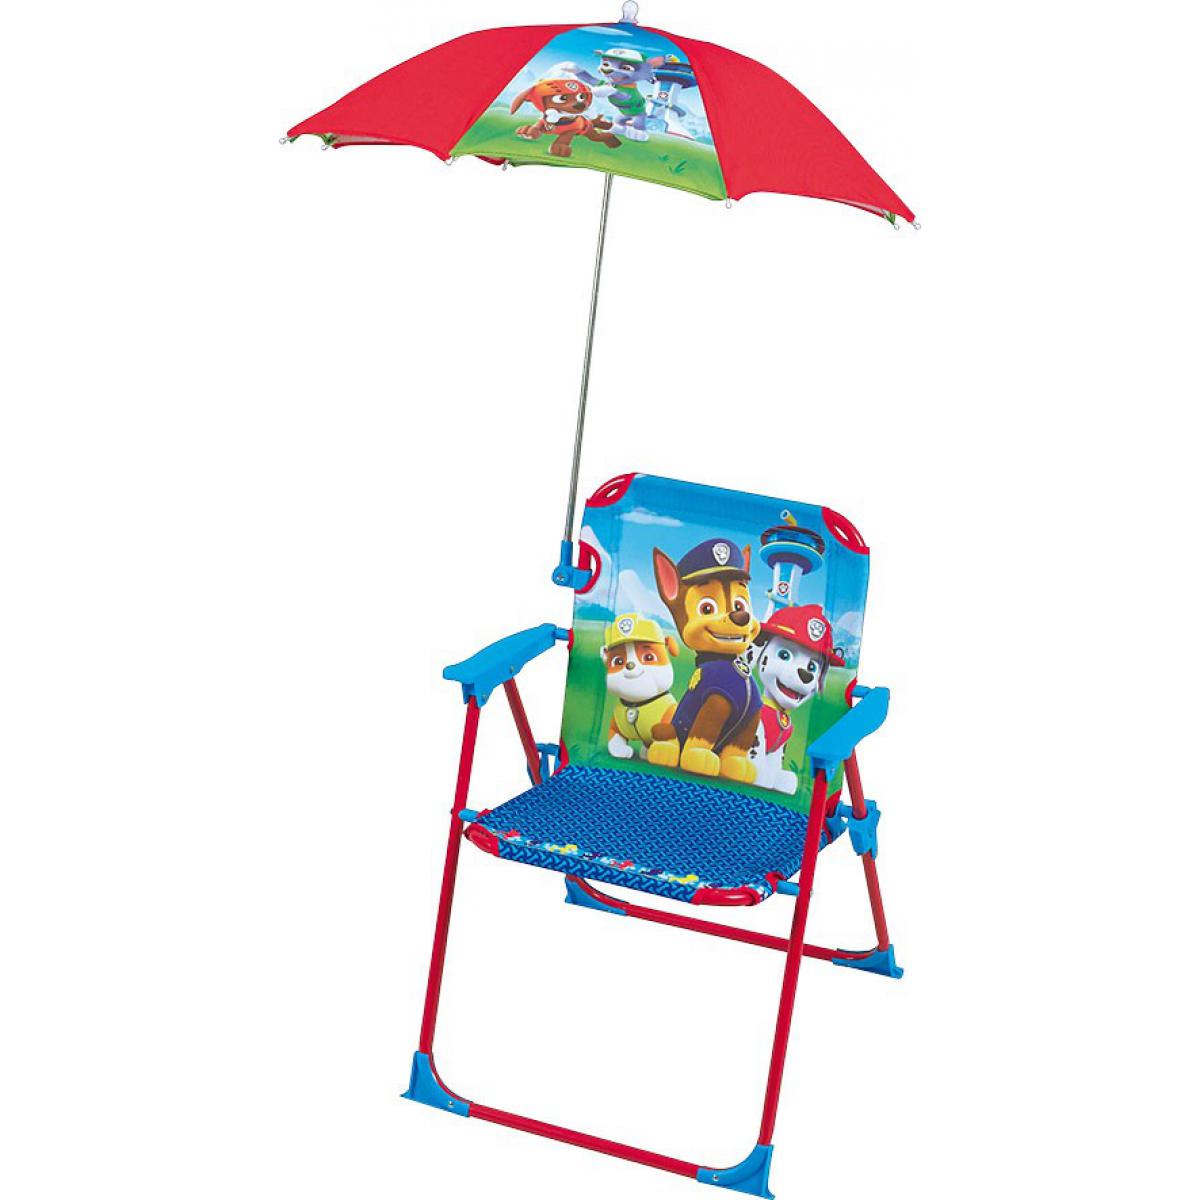 Jemini/Fun House - Chaise pliante enfant avec parasol - Pat'Patrouille - Fauteuil de jardin